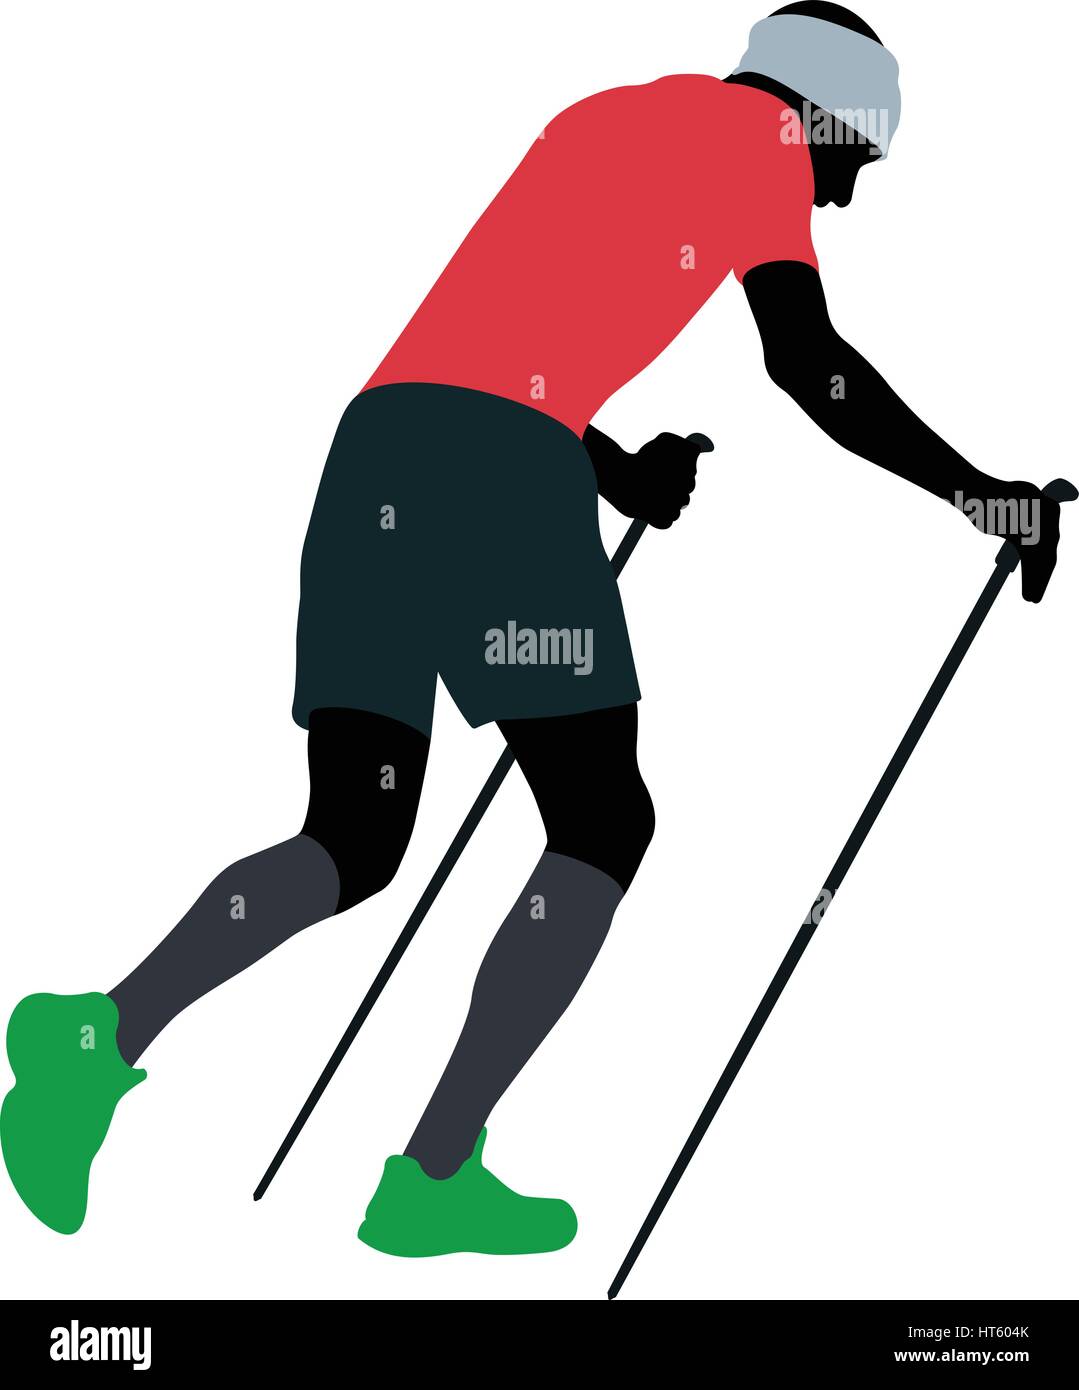 Homme coureur avec bâtons de marche en marche en montée dans des chaussettes de compression Illustration de Vecteur